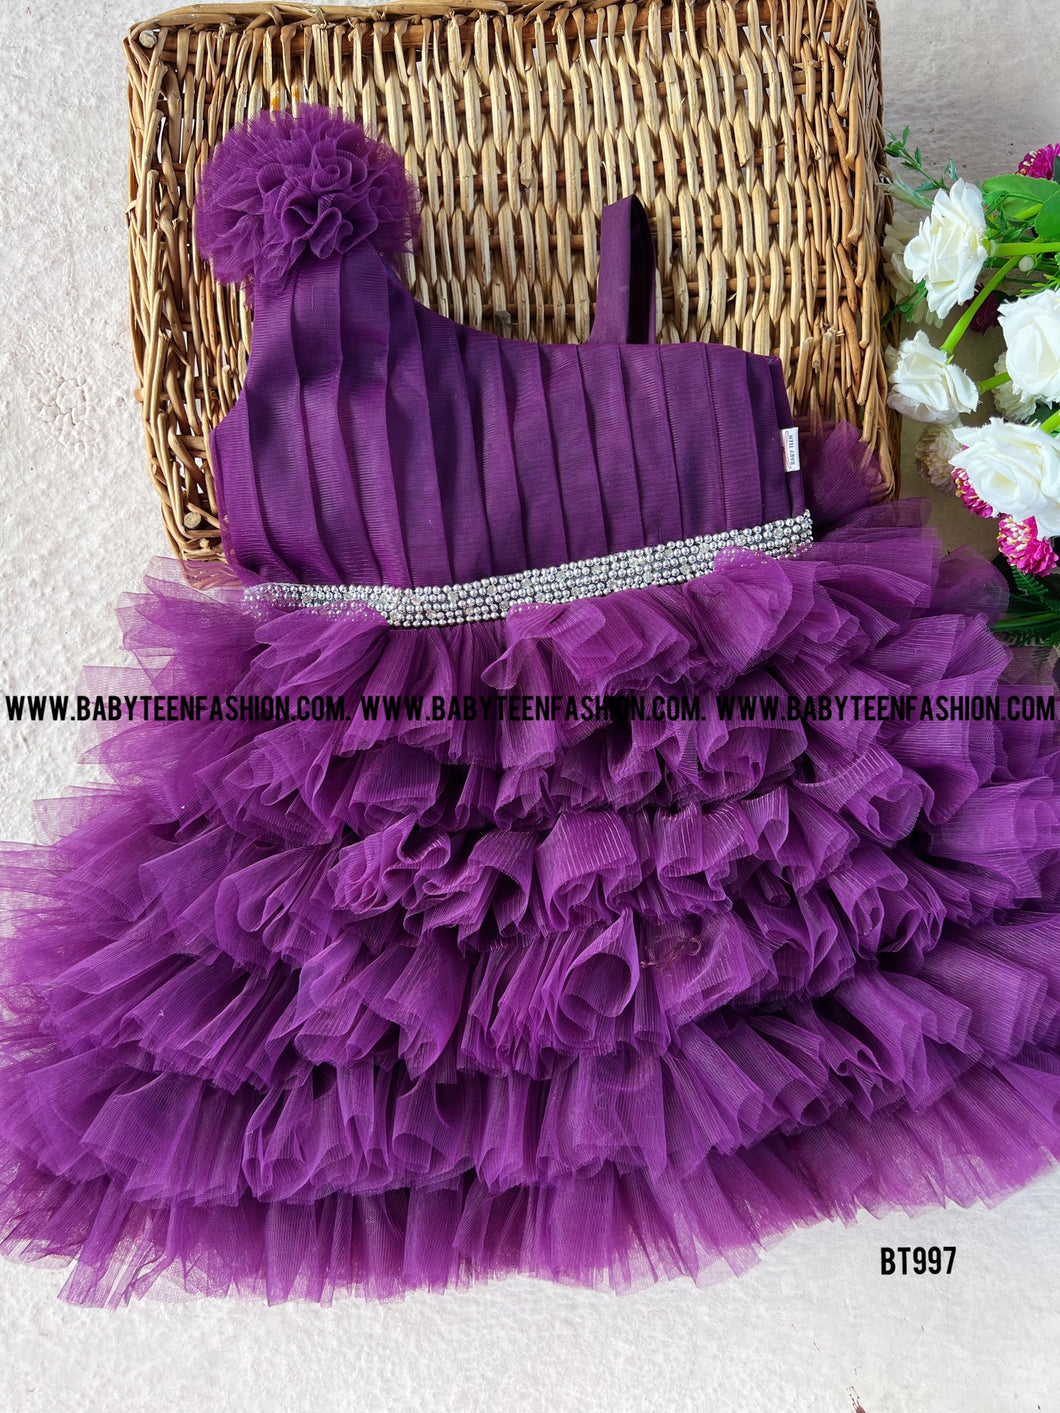 BT997 Regal Purple Party Gown – A Touch of Elegance for Little Divas